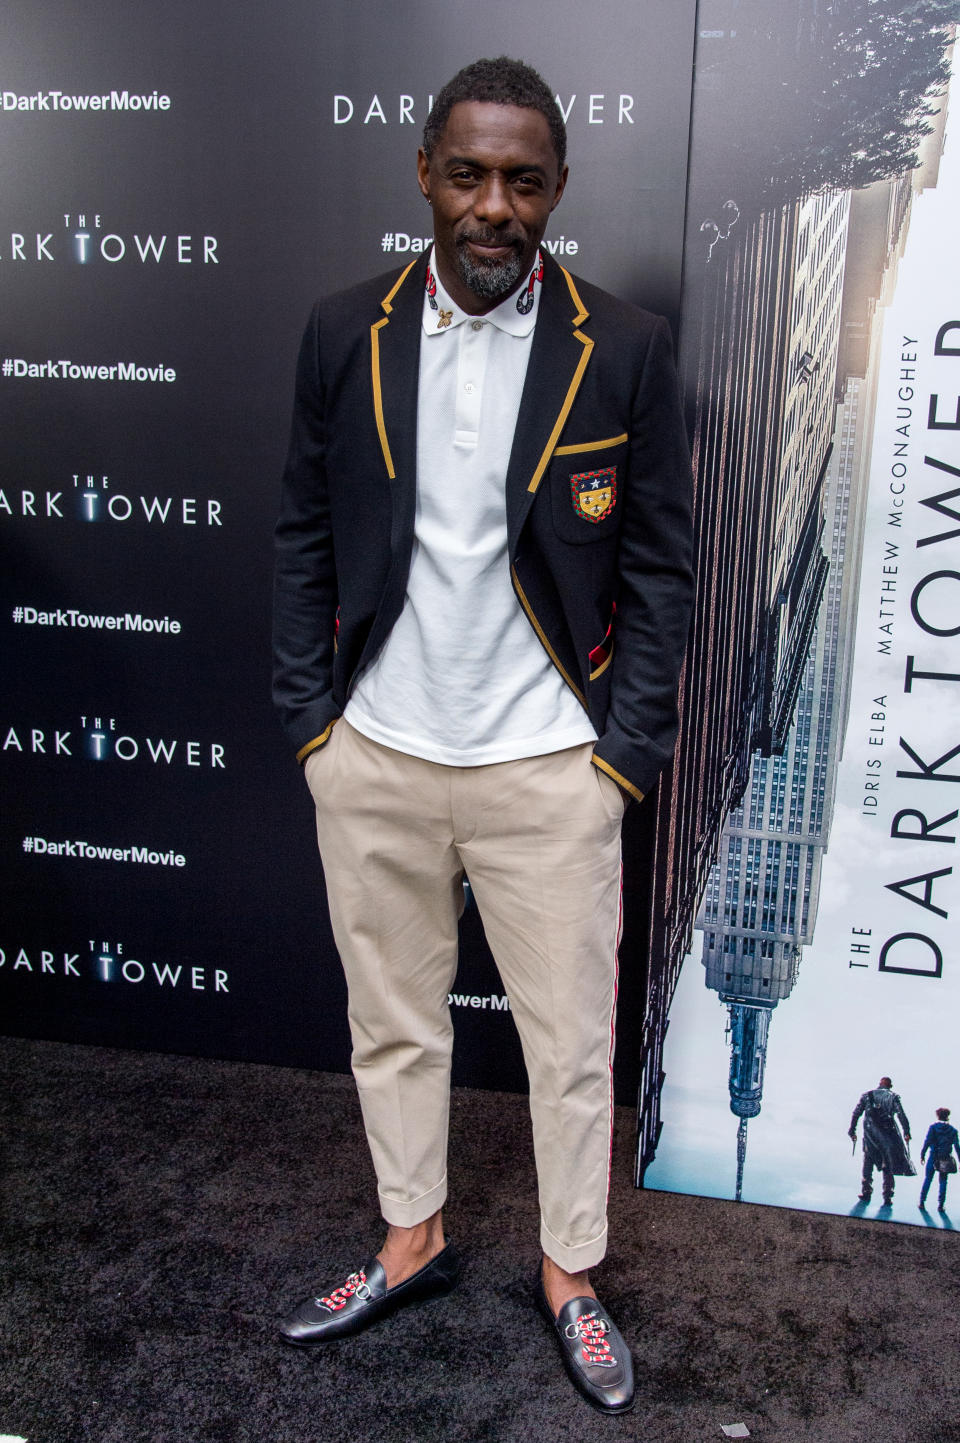 Star mit Stil: Idris Elba bei der Premiere von “The Dark Tower” (Bild: Getty Images)